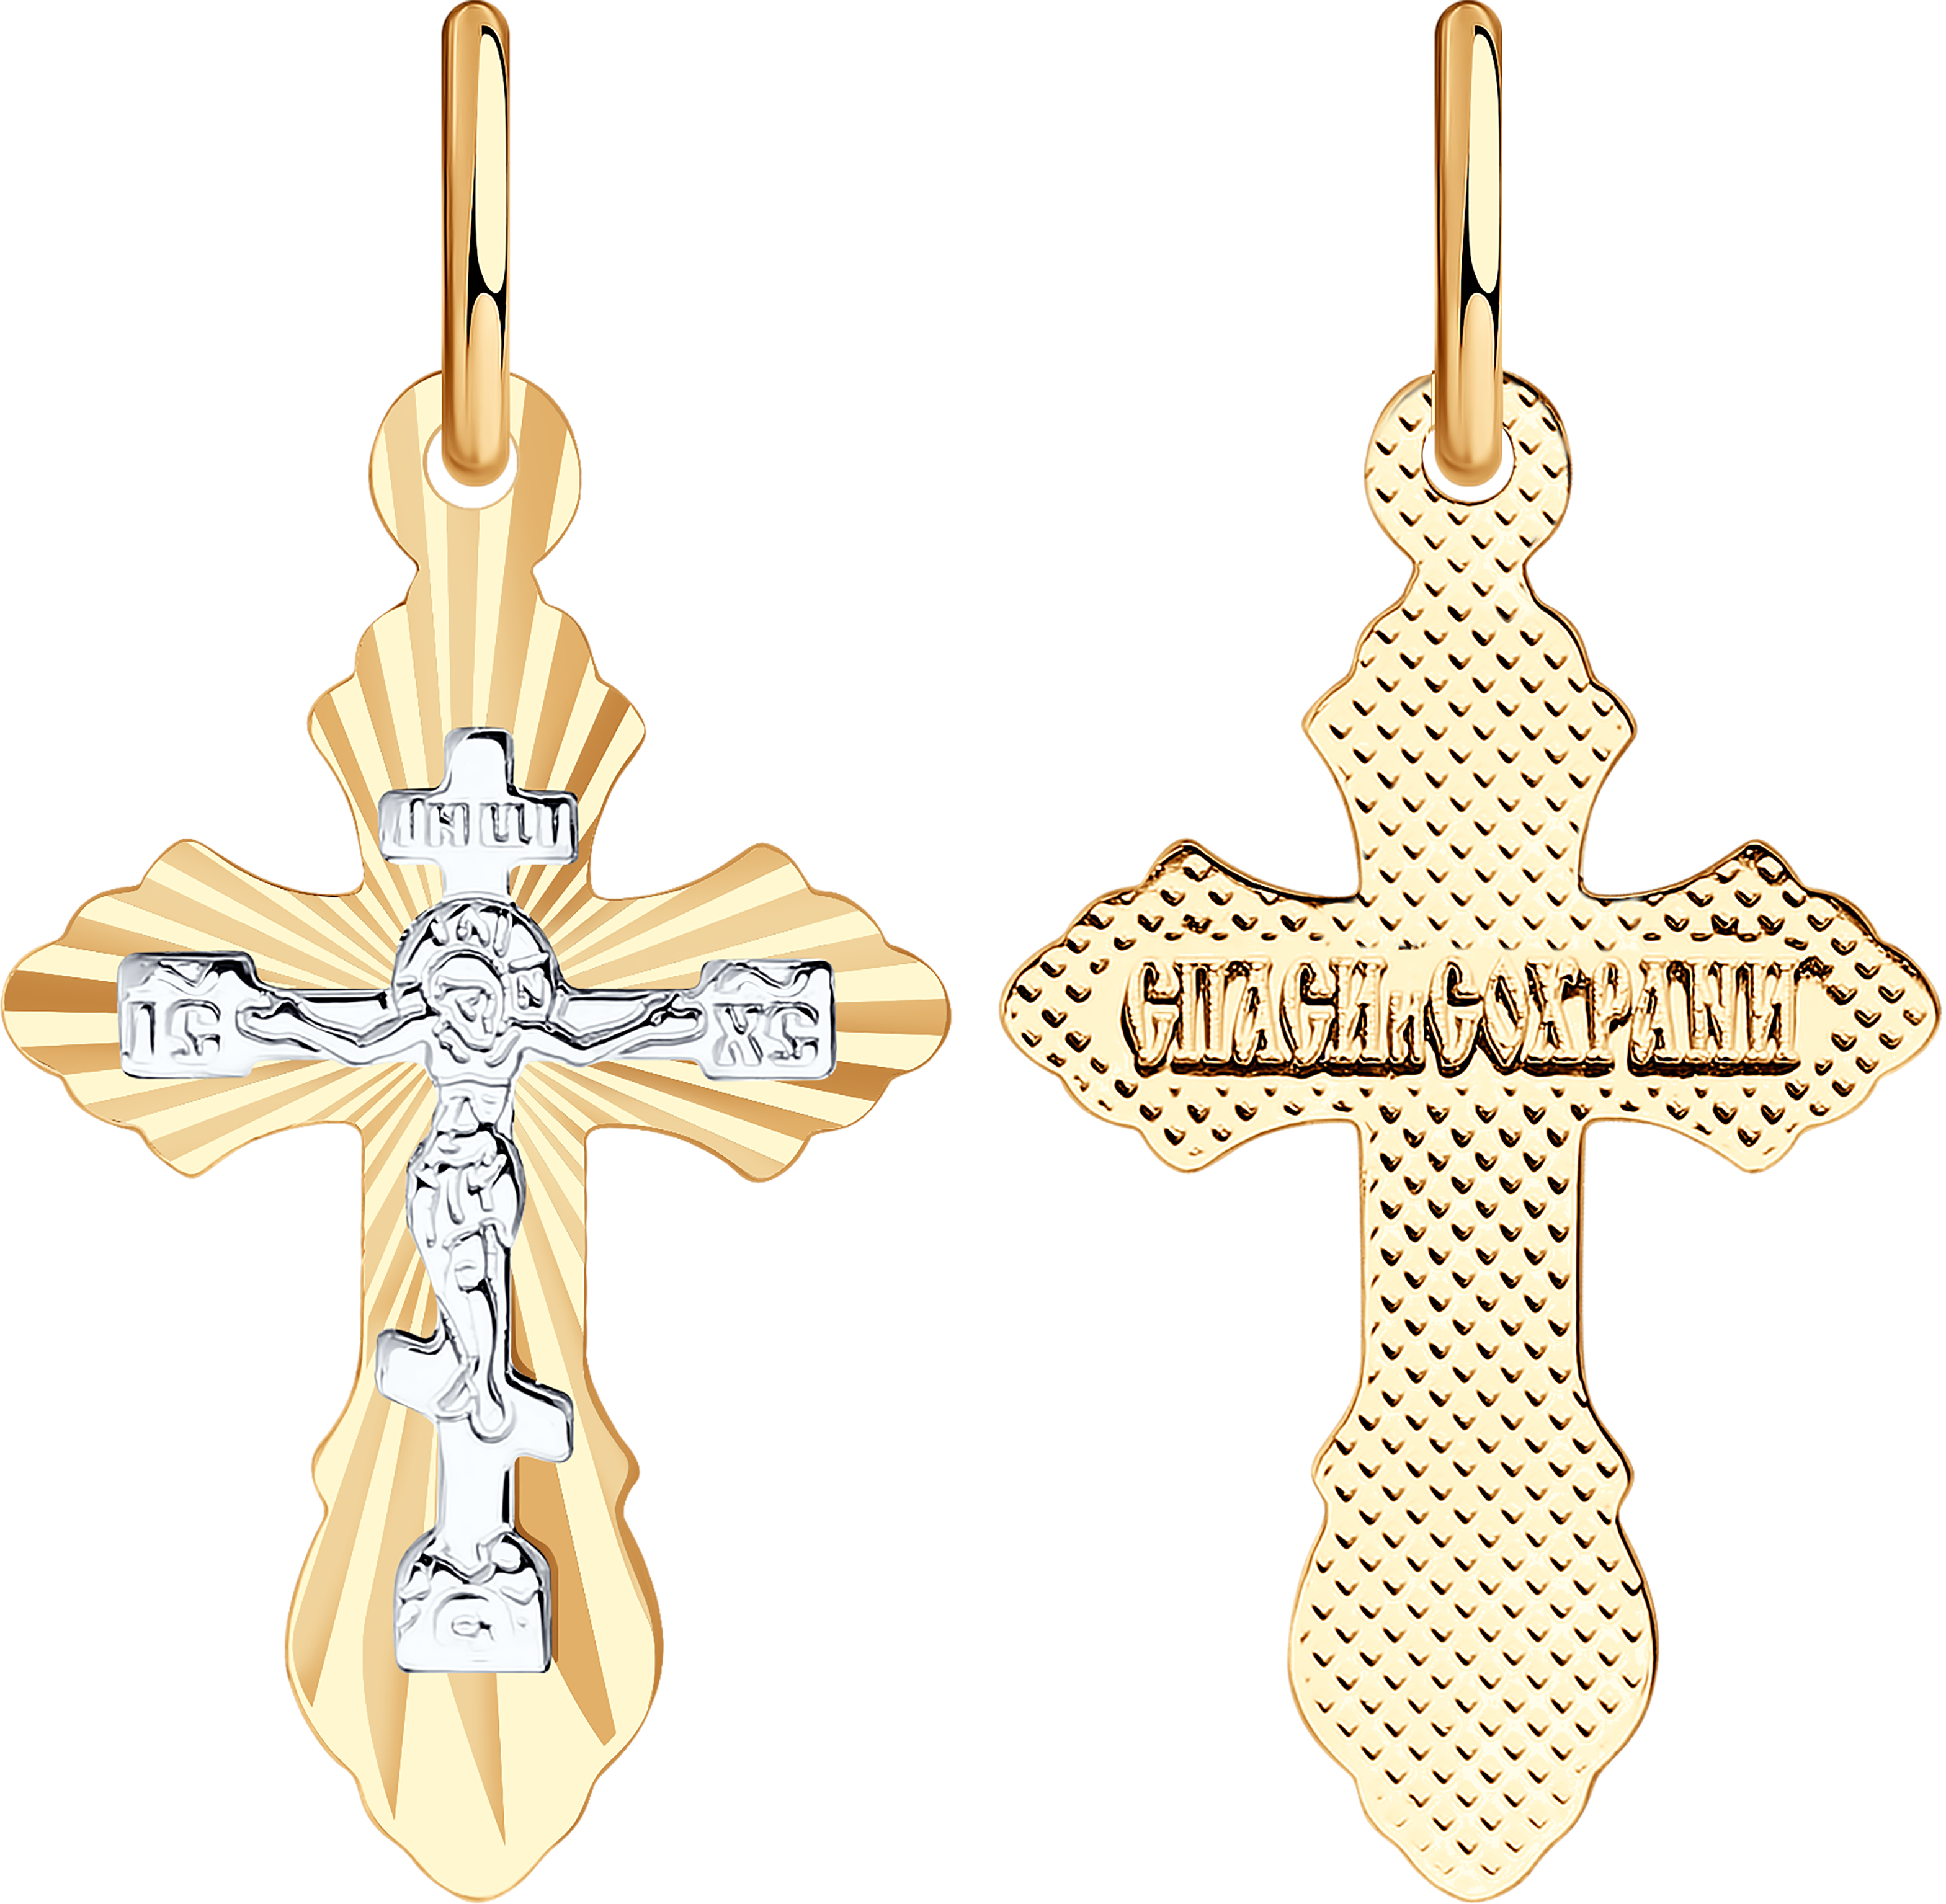 Крест SOKOLOV из комбинированного золота с алмазной гранью